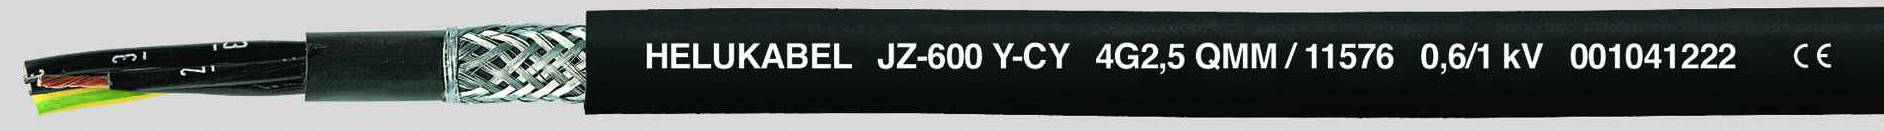 HELUKABEL JZ-600-Y-CY Steuerleitung 7 G 2.50 mm² Schwarz 11578-1000 1000 m